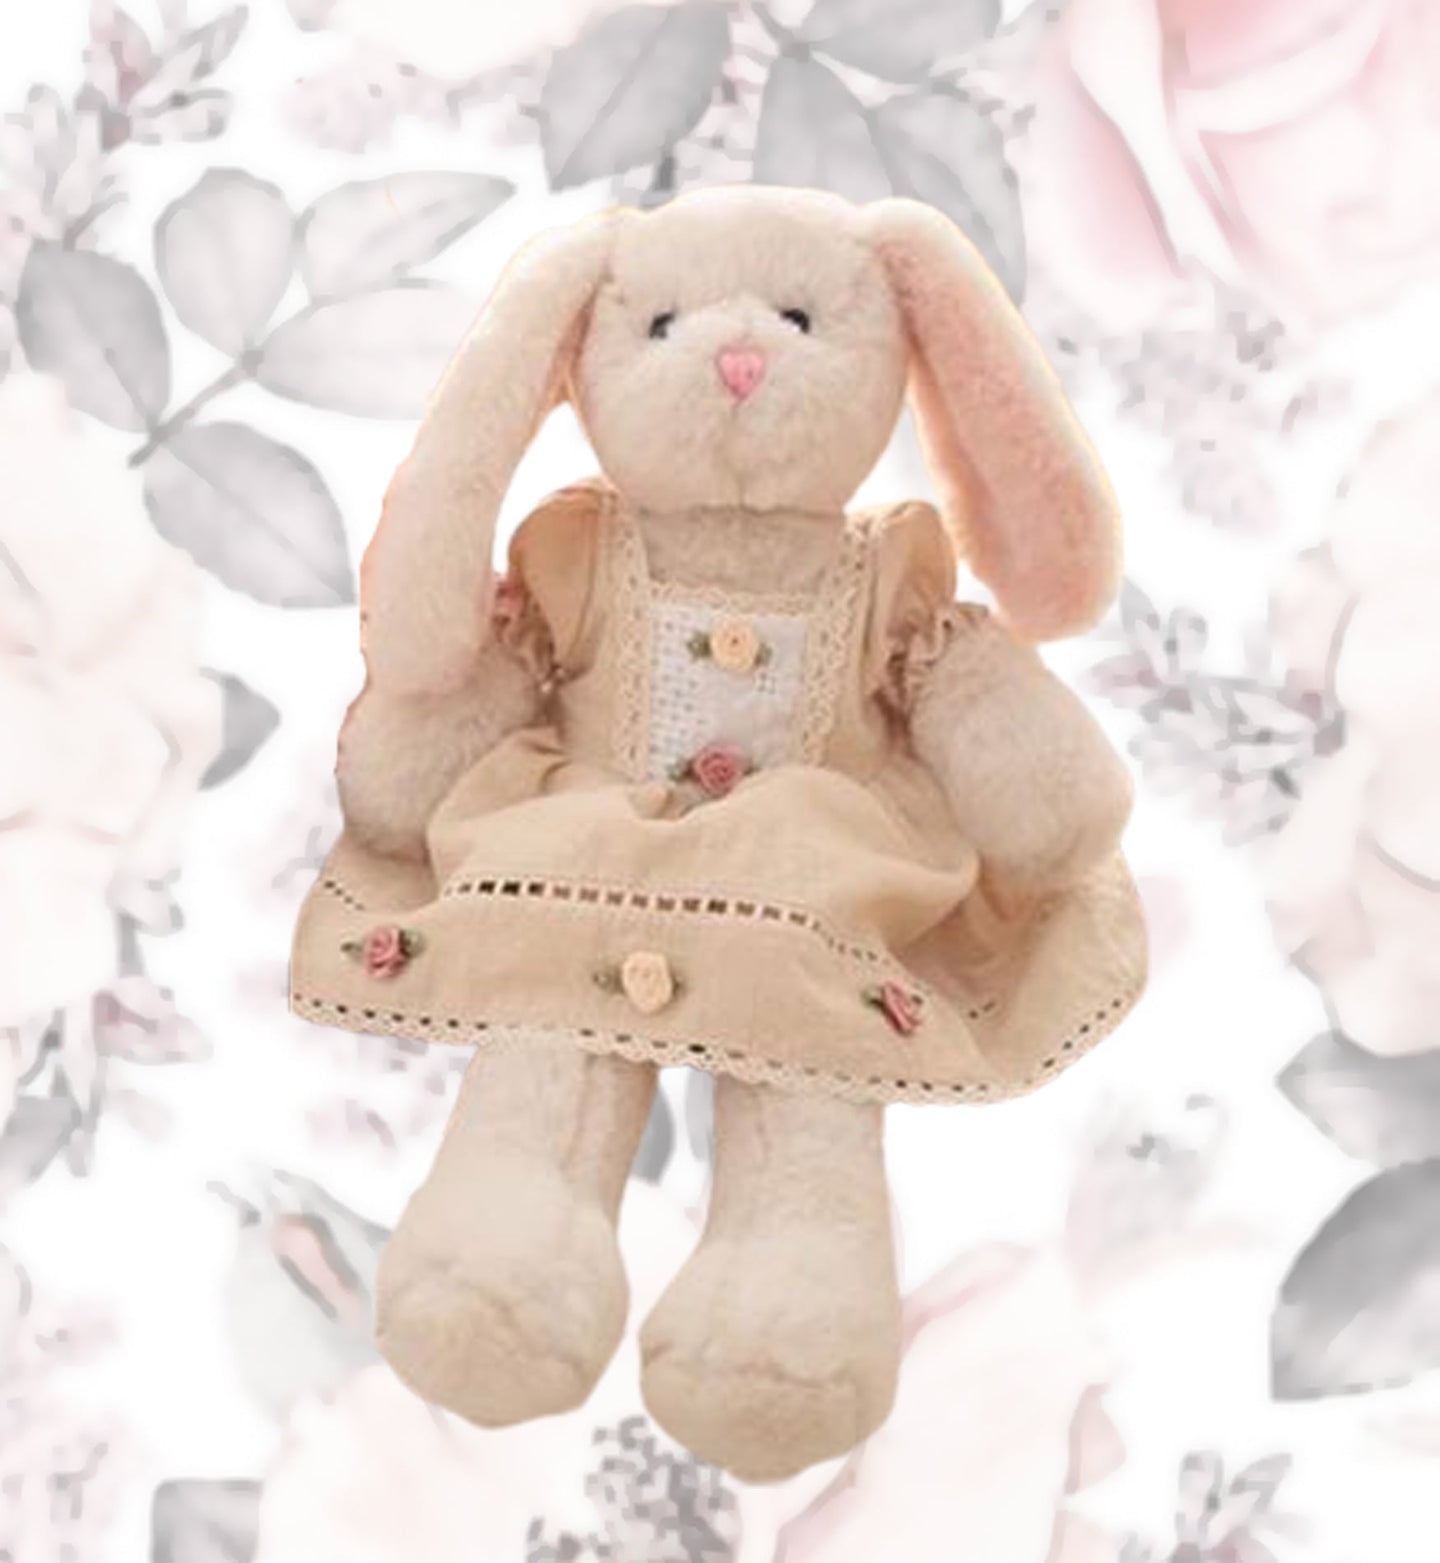 Plush Rabbit/Bunny Reborn Doll Photo Prop 15